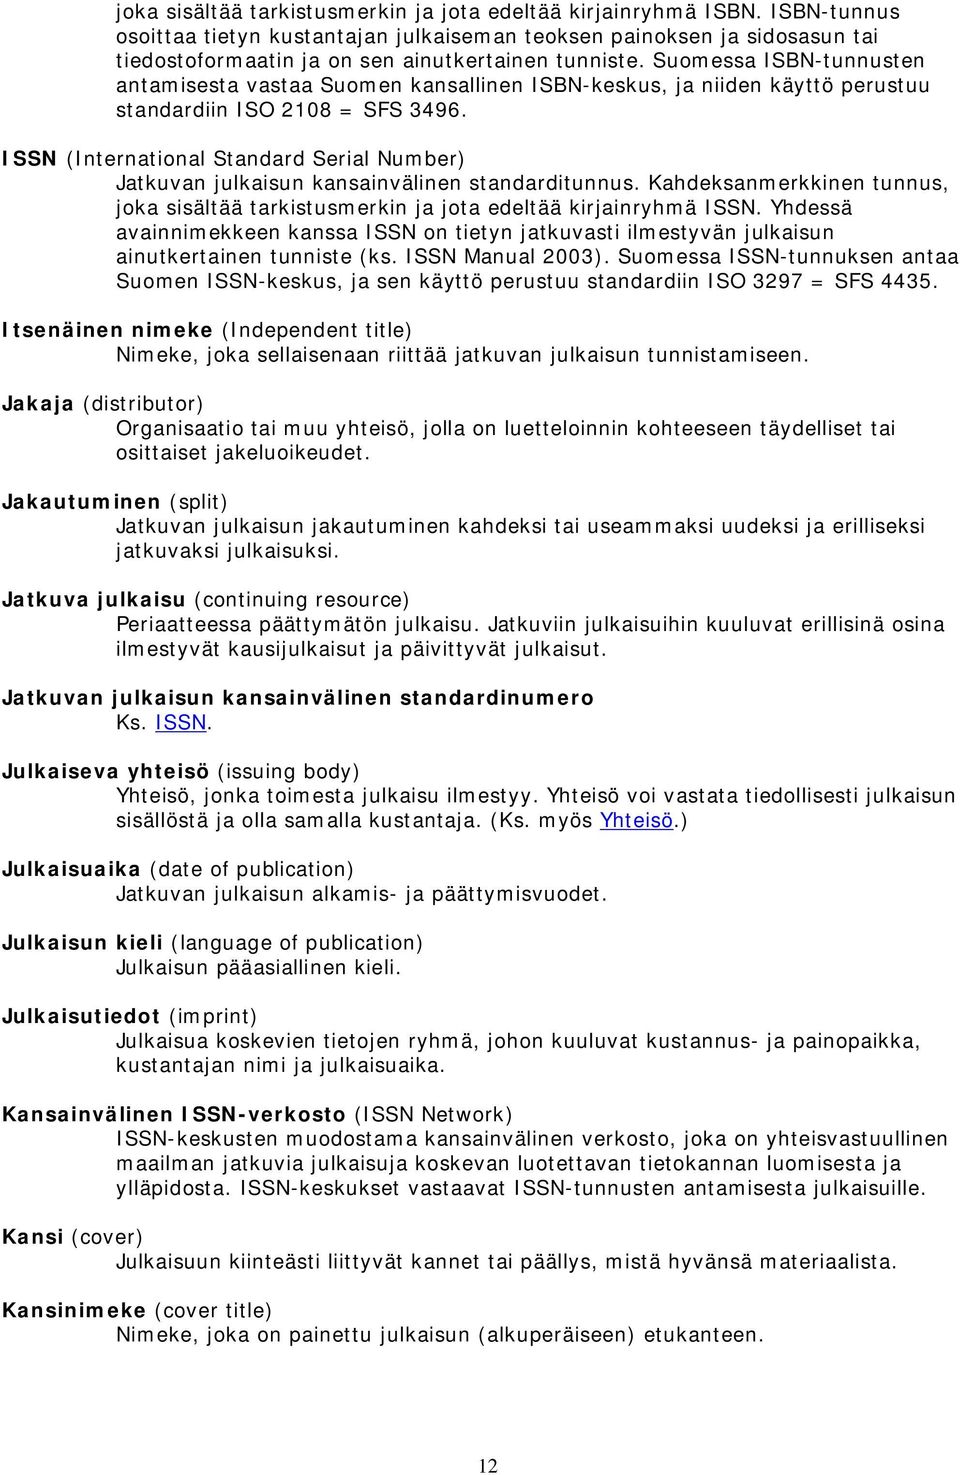 Suomessa ISBN-tunnusten antamisesta vastaa Suomen kansallinen ISBN-keskus, ja niiden käyttö perustuu standardiin ISO 2108 = SFS 3496.